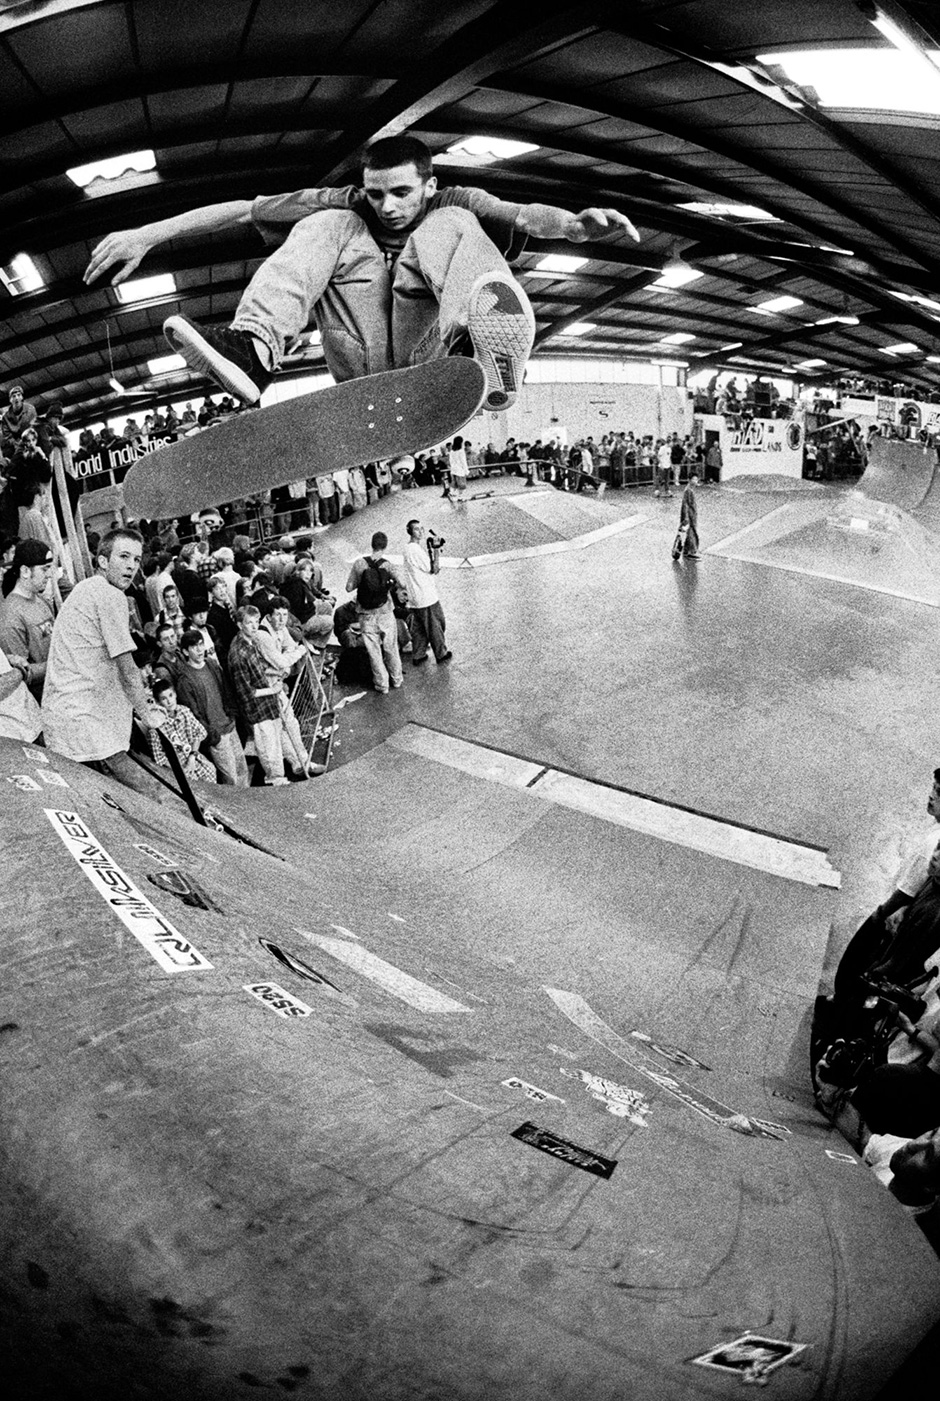 Car Shipman frontside flips at Radlands in 1994. Wig Worland shoots